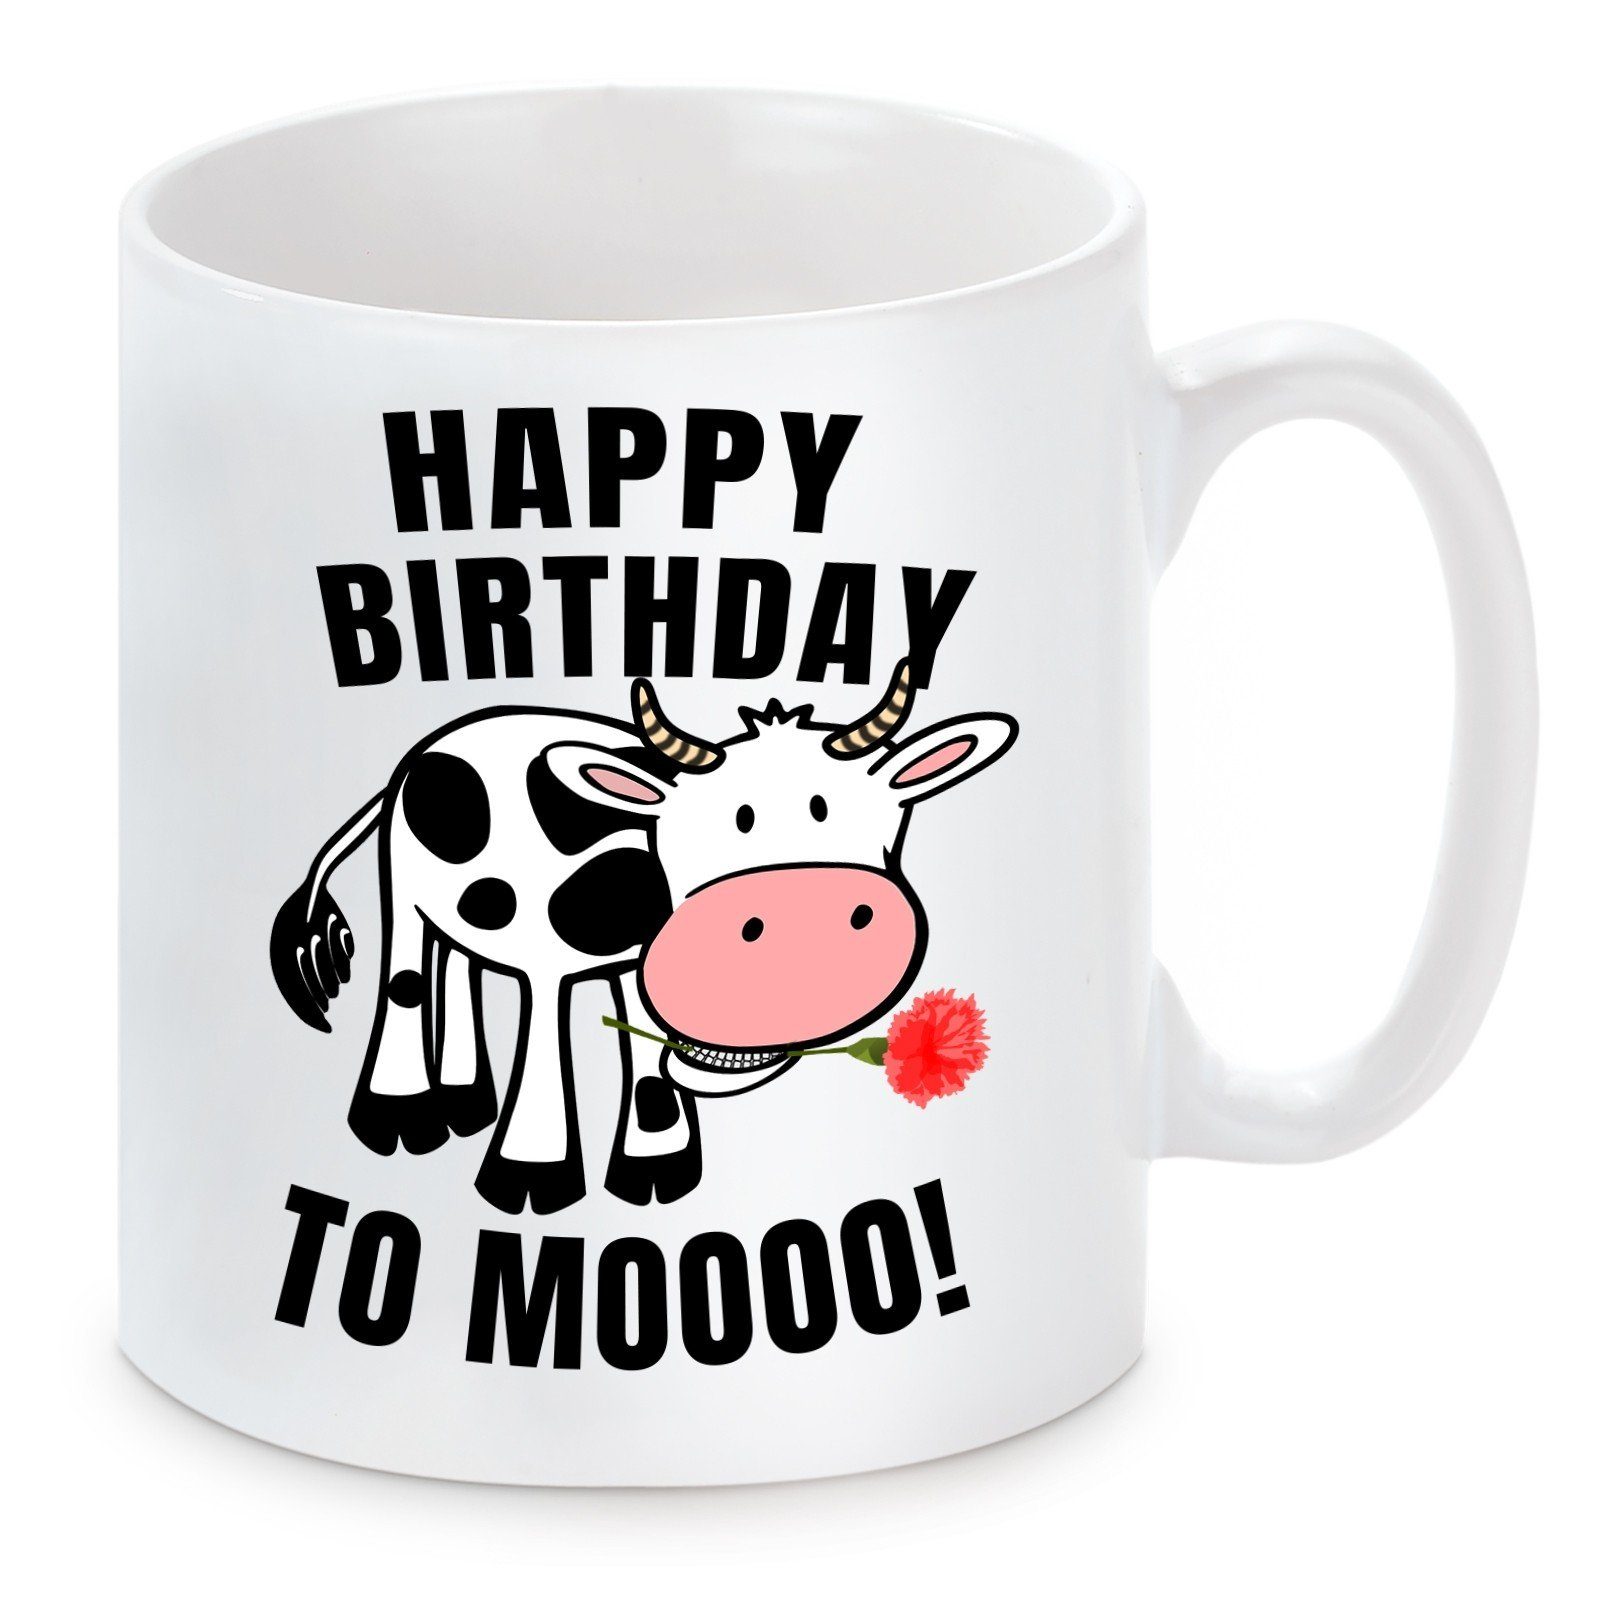 Herzbotschaft Tasse Kaffeebecher mit Motiv Happy Birthday to Mooooo, Keramik, Kaffeetasse spülmaschinenfest und mikrowellengeeignet